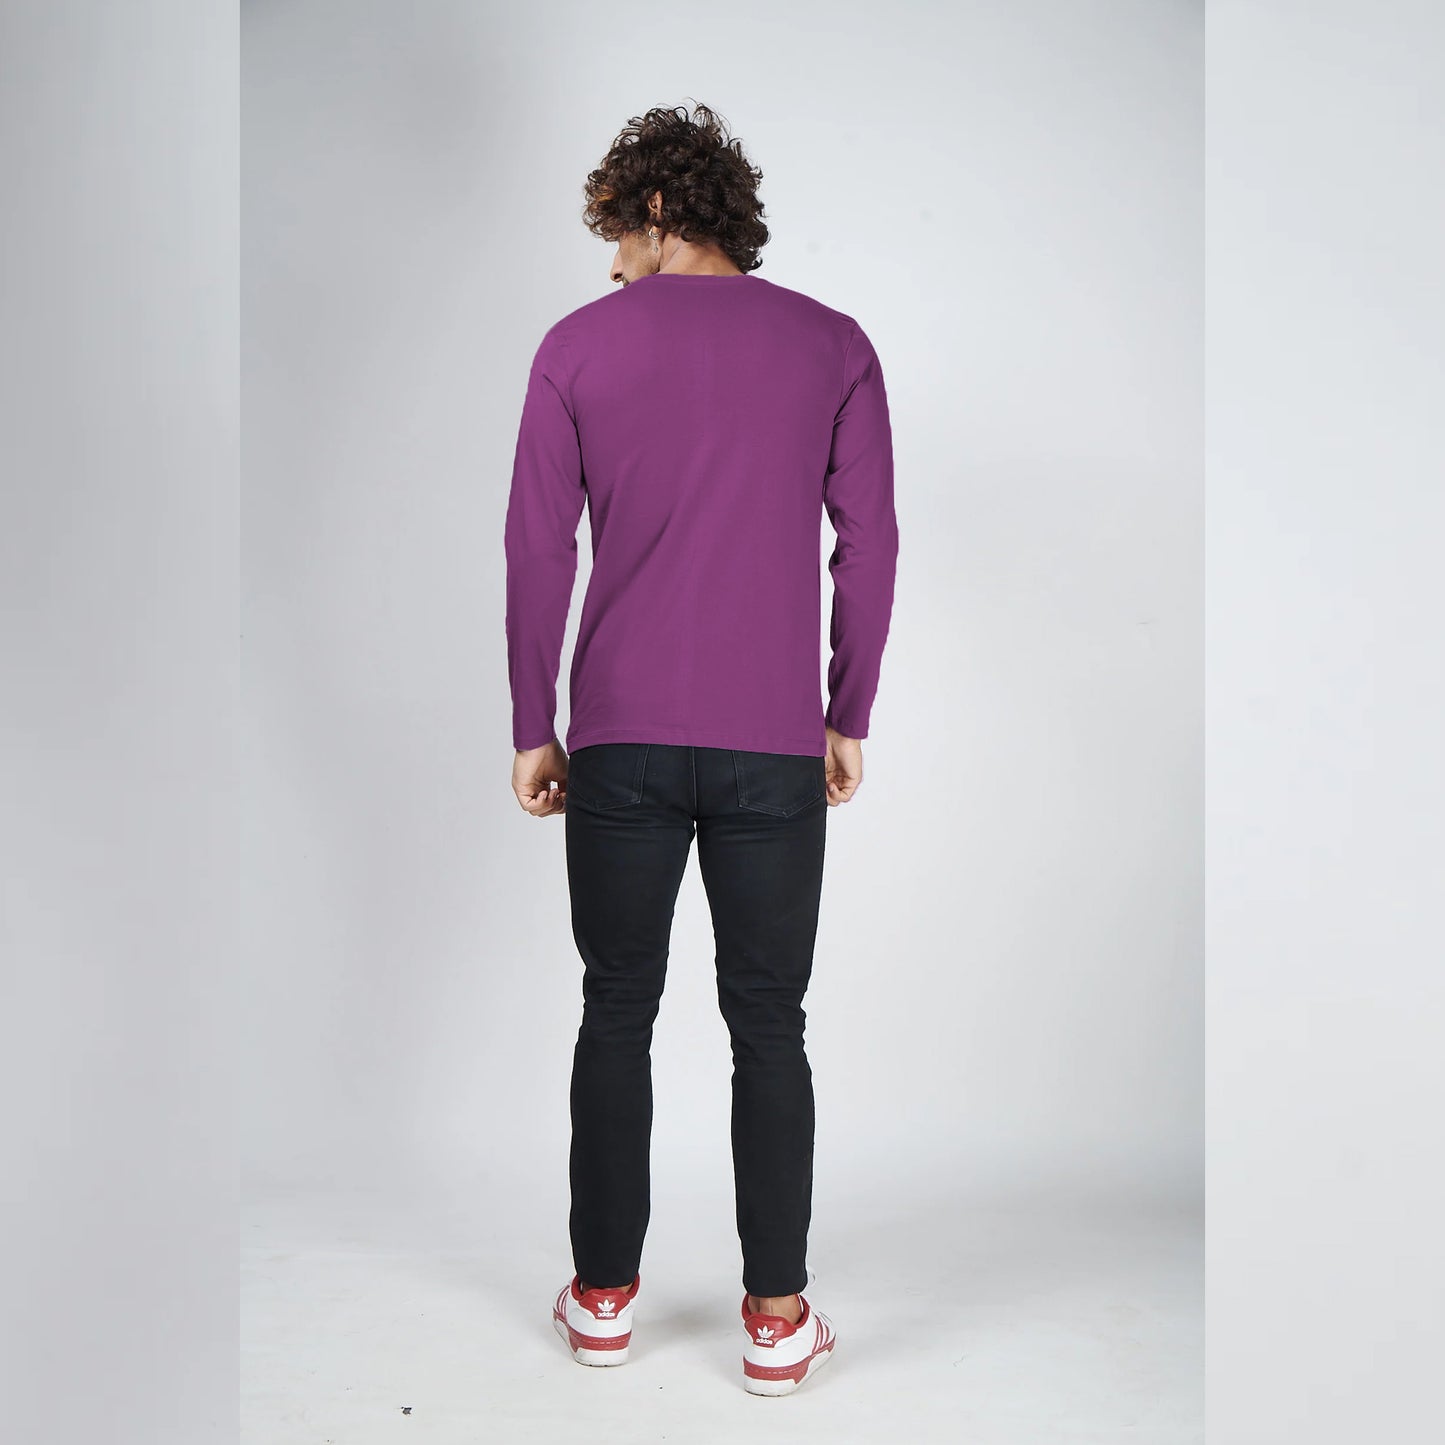 Basic Light Purple Full Sleeves T-Shirt